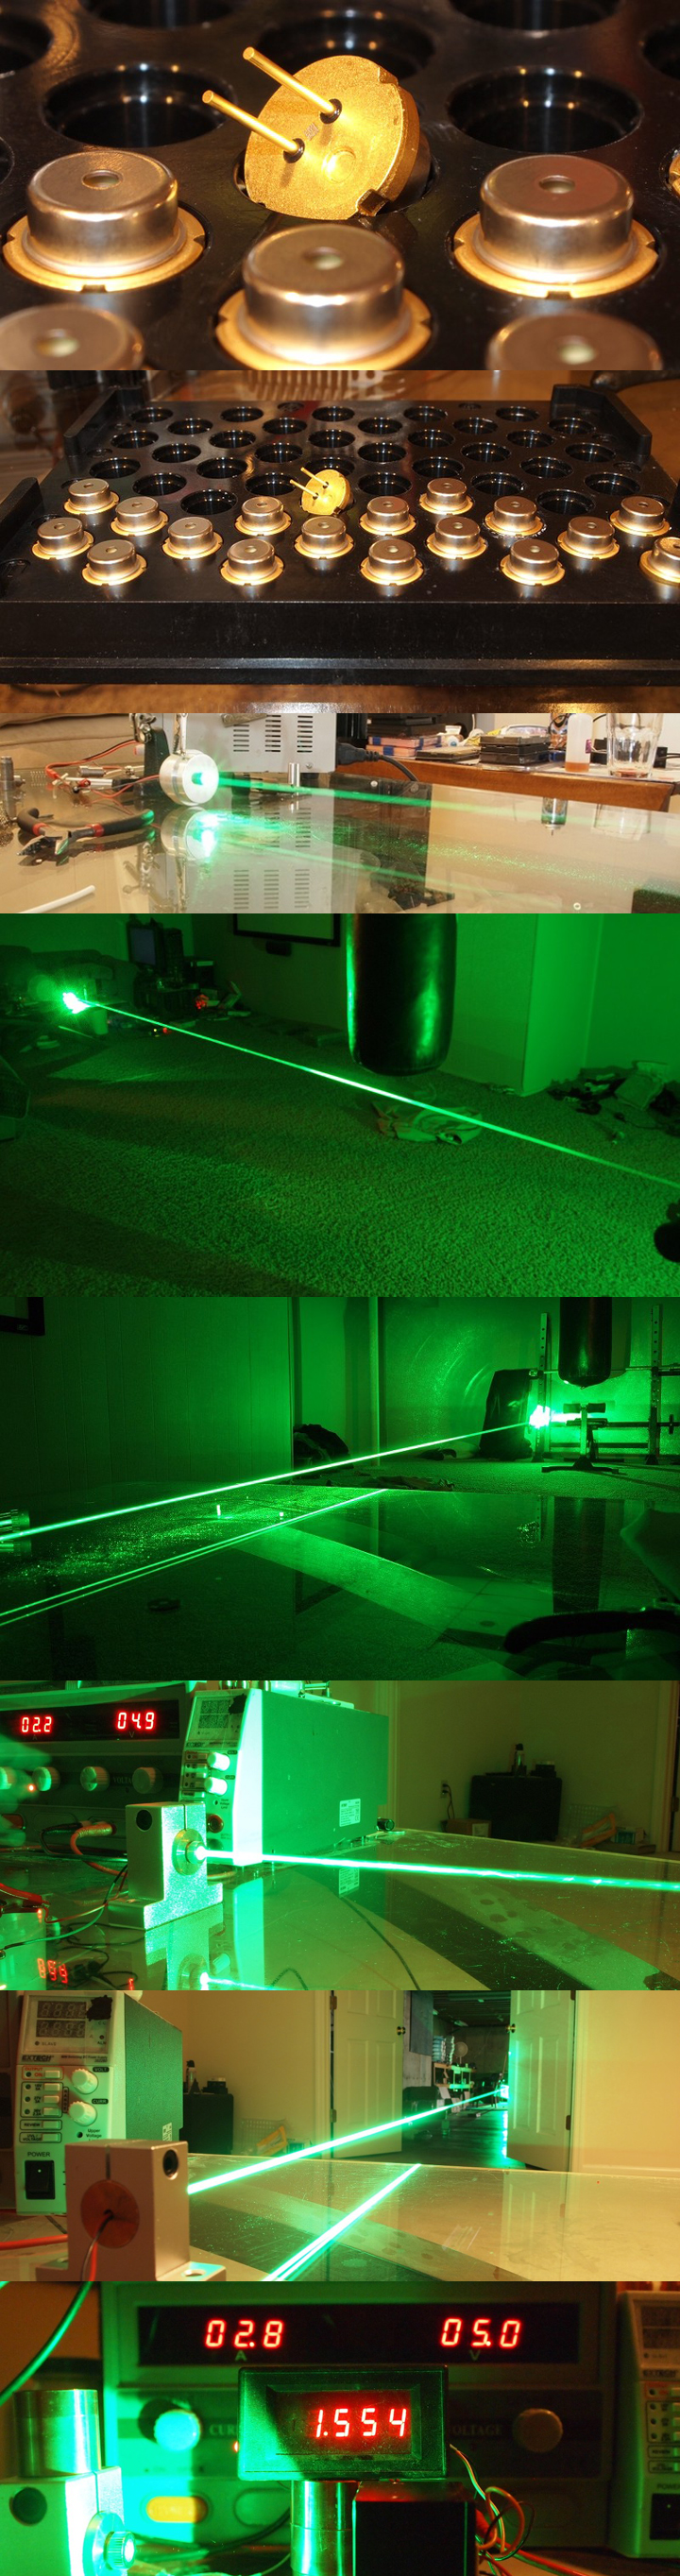 1W groene laser diode